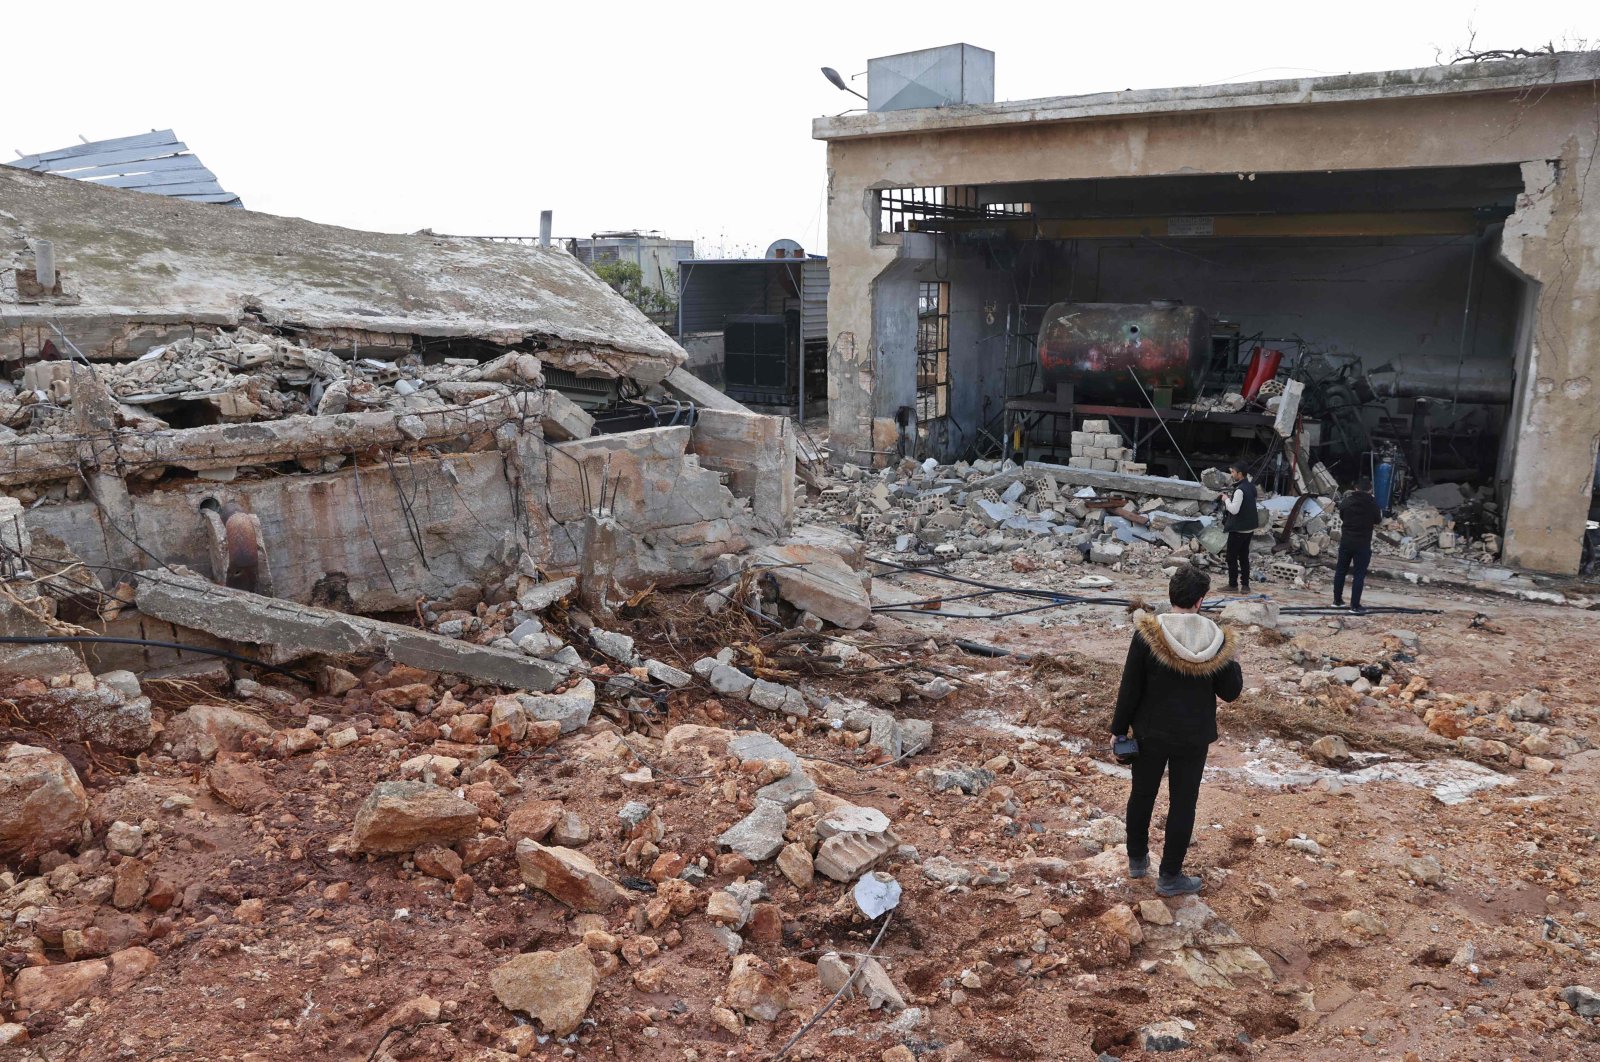 Diduga serangan YPG menargetkan warga sipil yang tinggal di Aleppo . Suriah